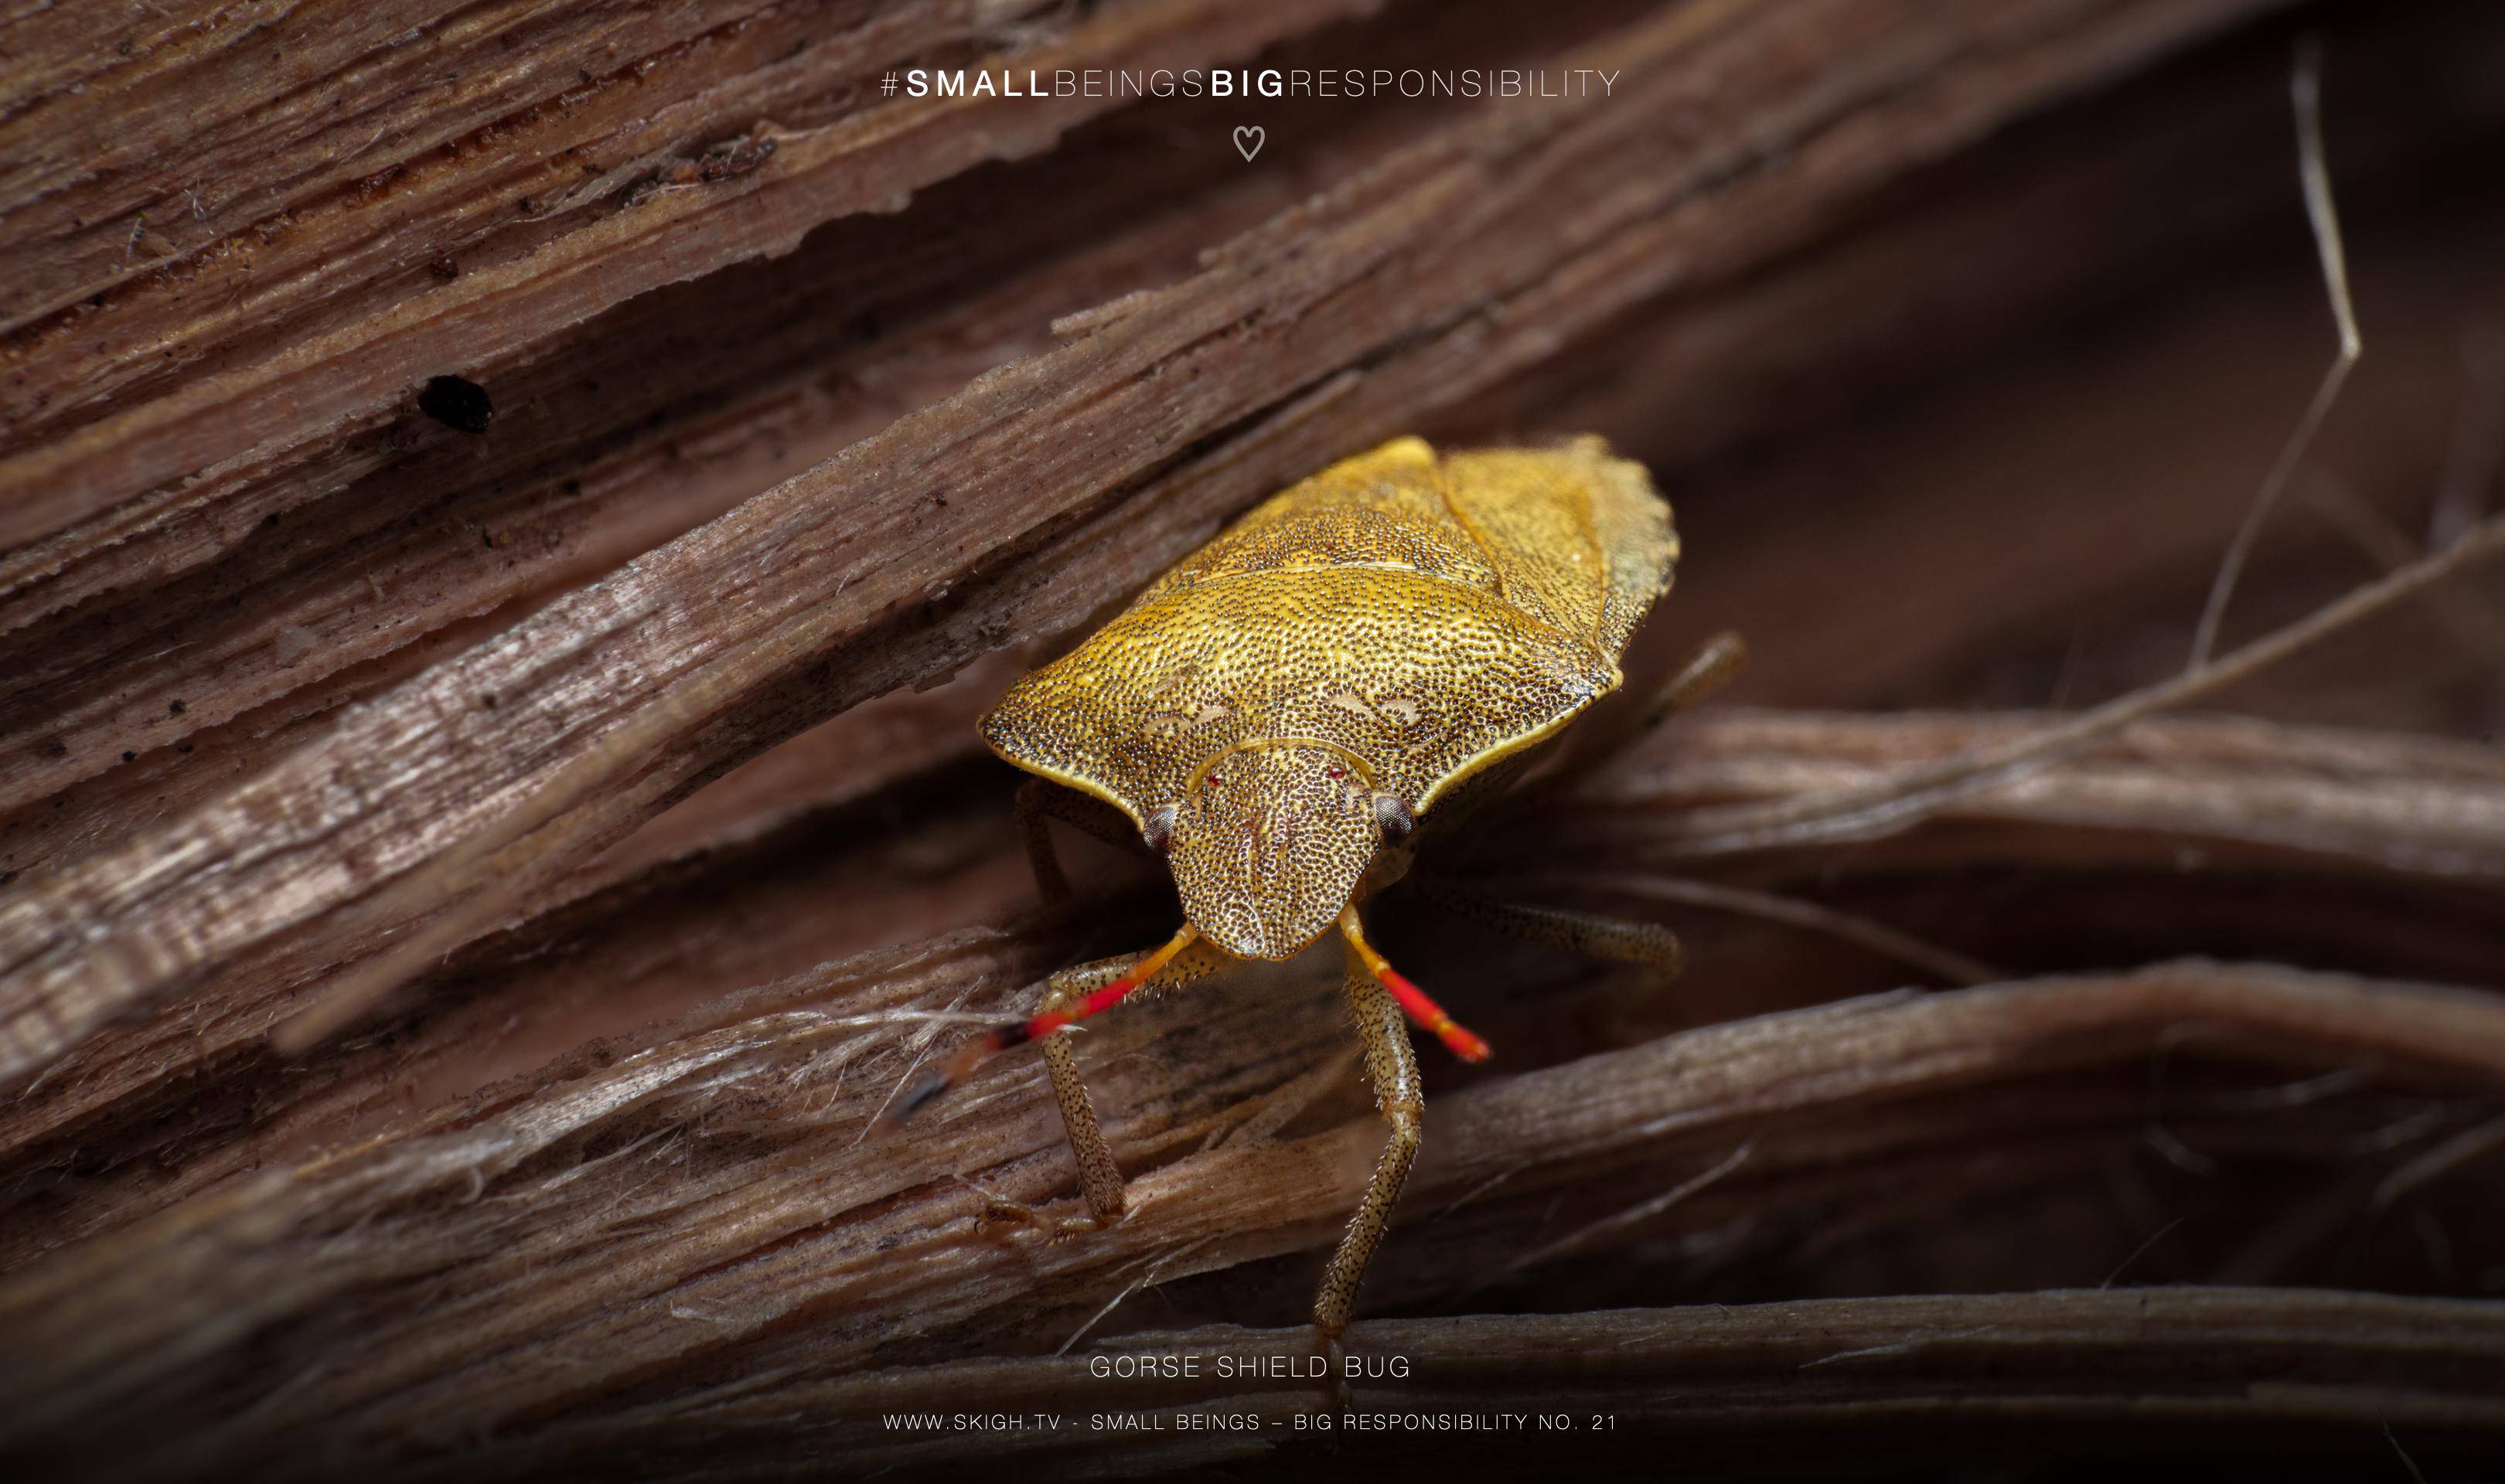 Gorse shield bug